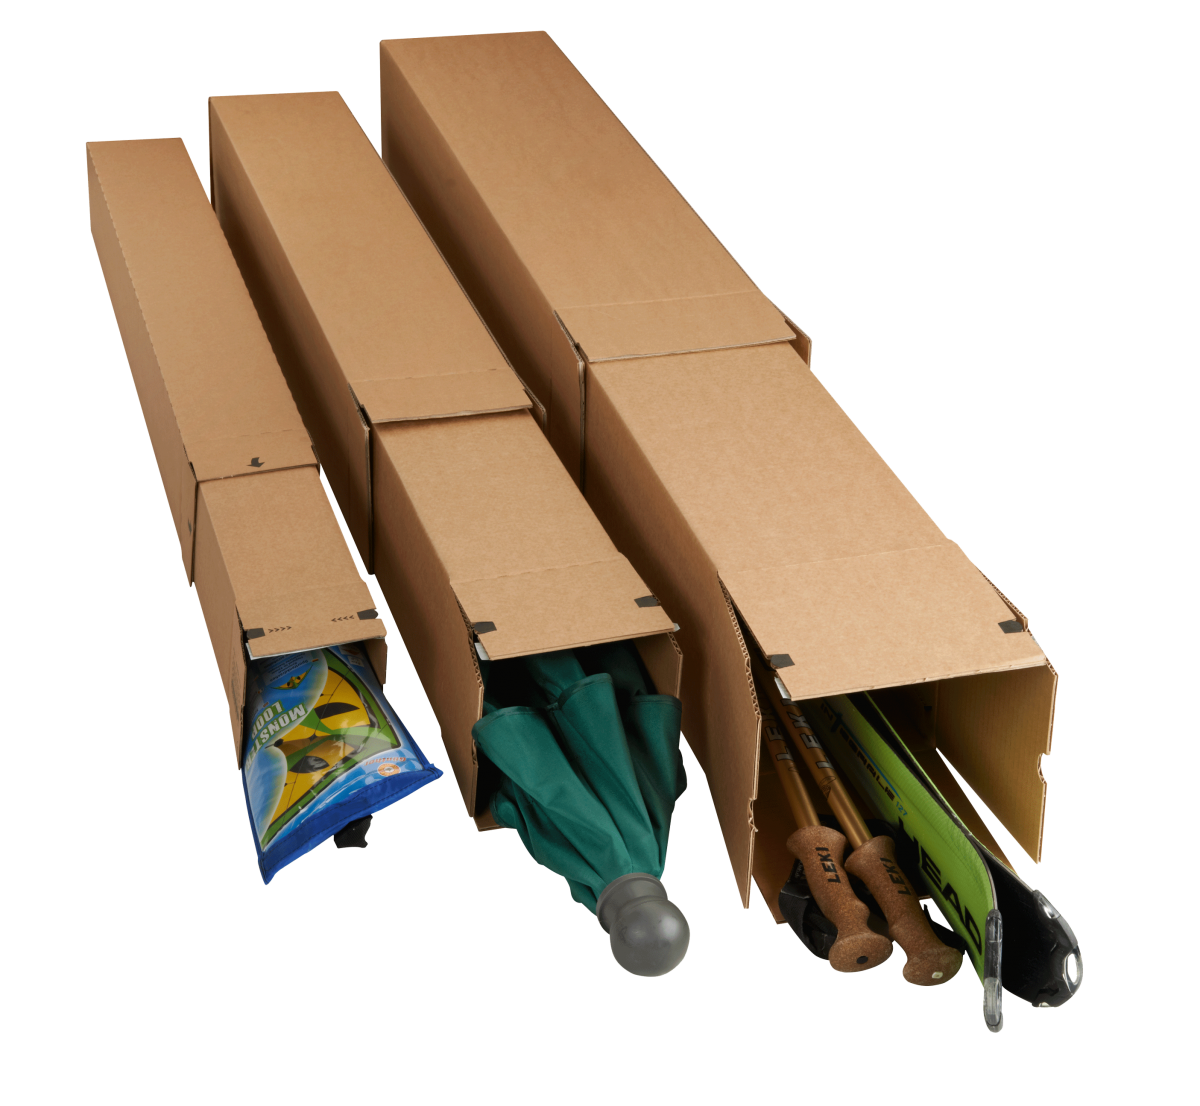 Удлиненные коробки. Длинные картонные коробки. Коробка длинная. Коробки длинные для упаковки. Длинные узкие картонные короба.